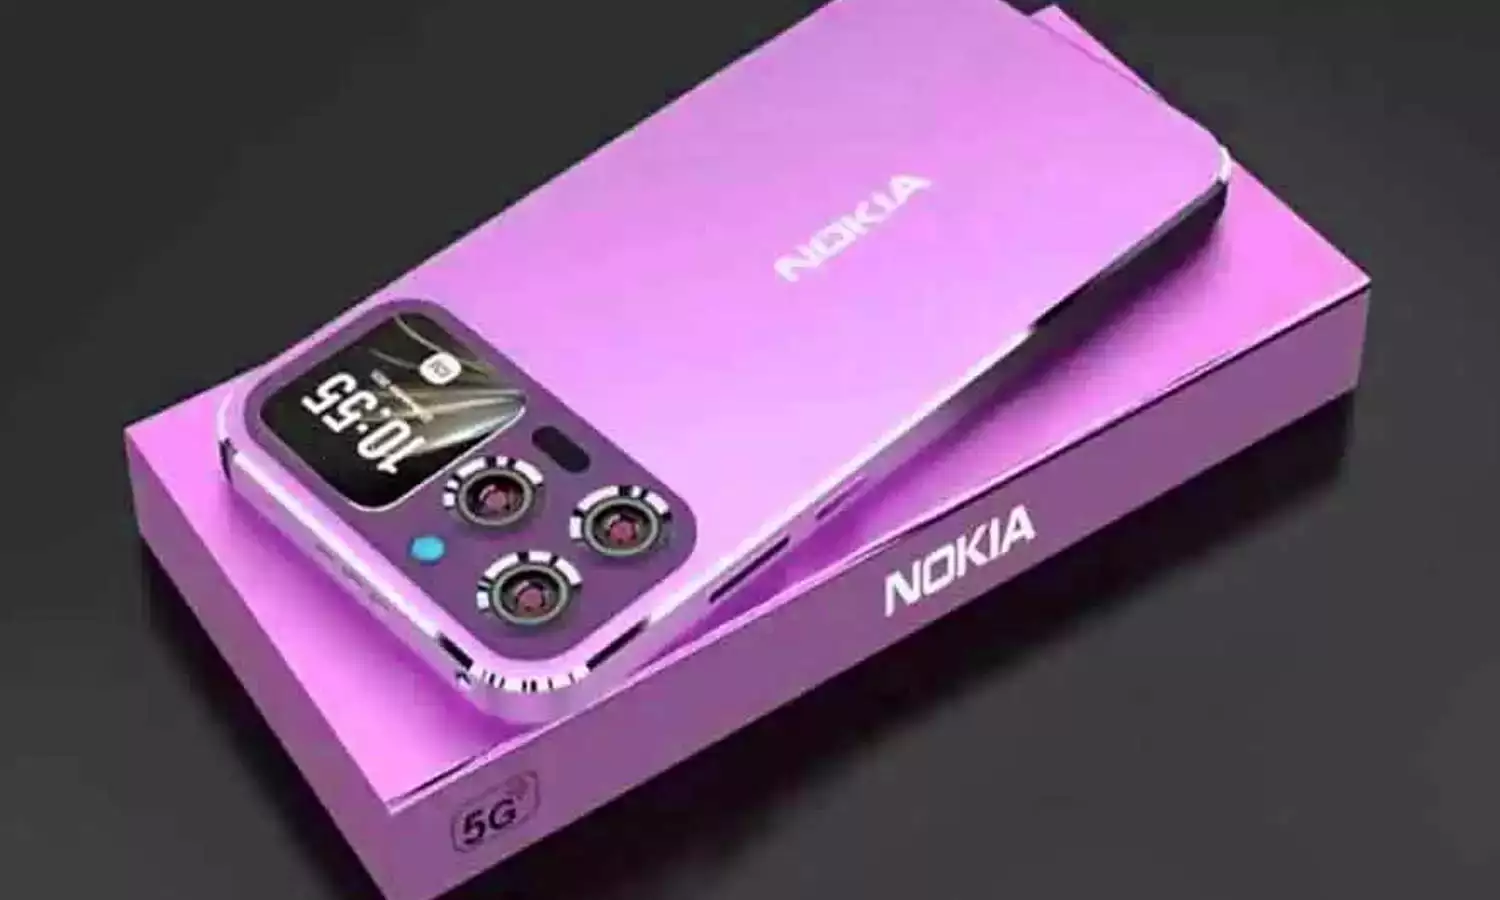 Nokia Joker Lite Smartphone